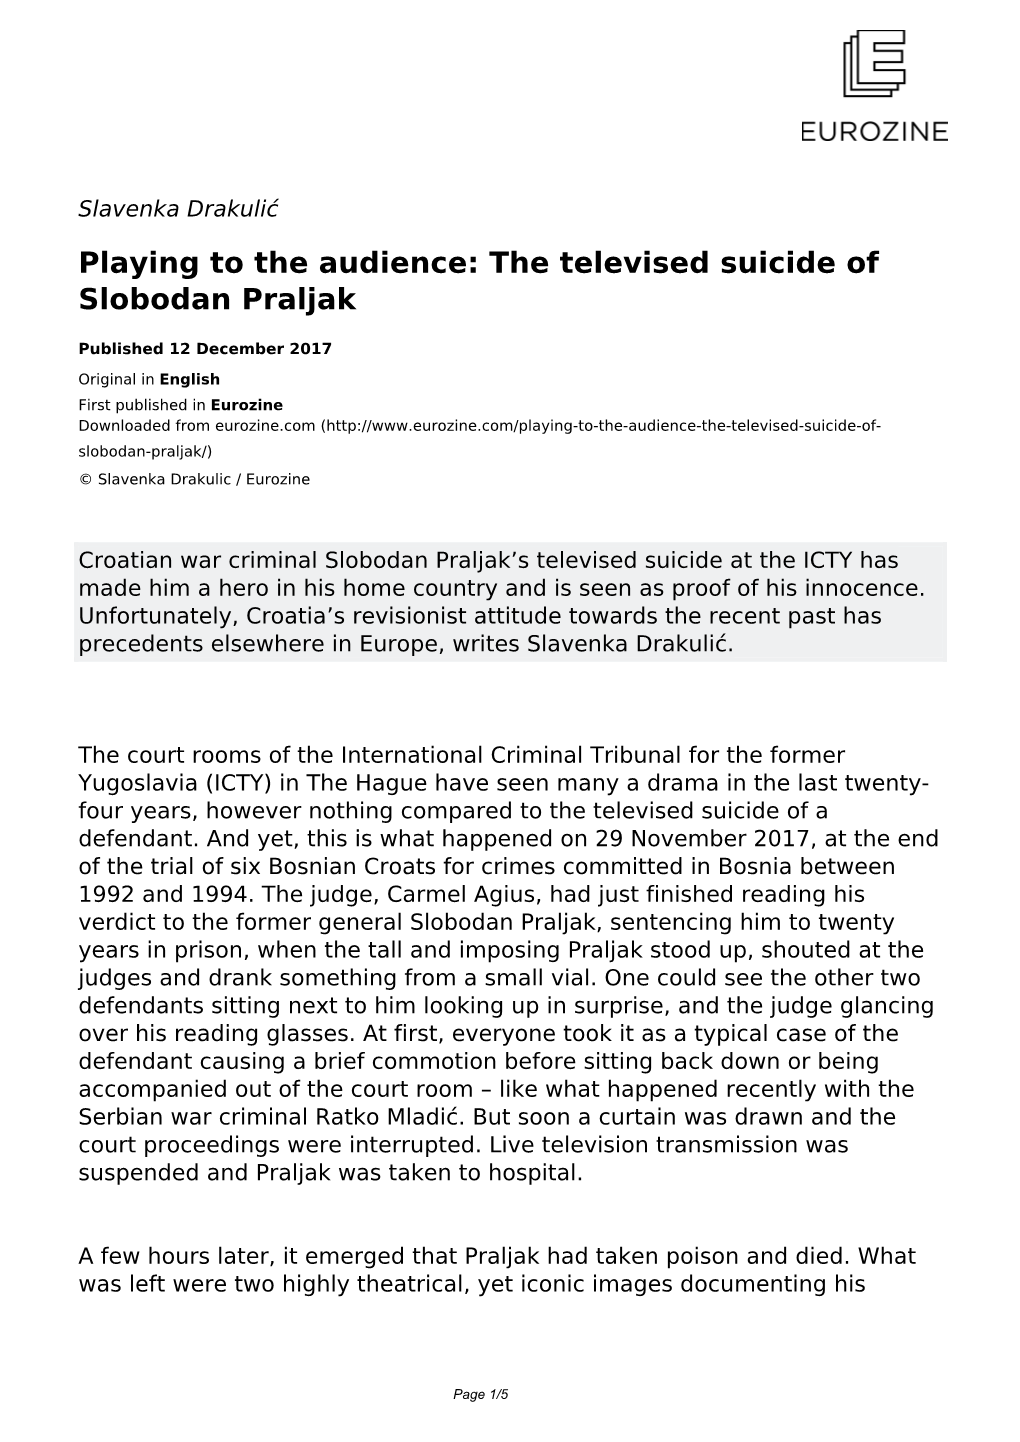 The Televised Suicide of Slobodan Praljak